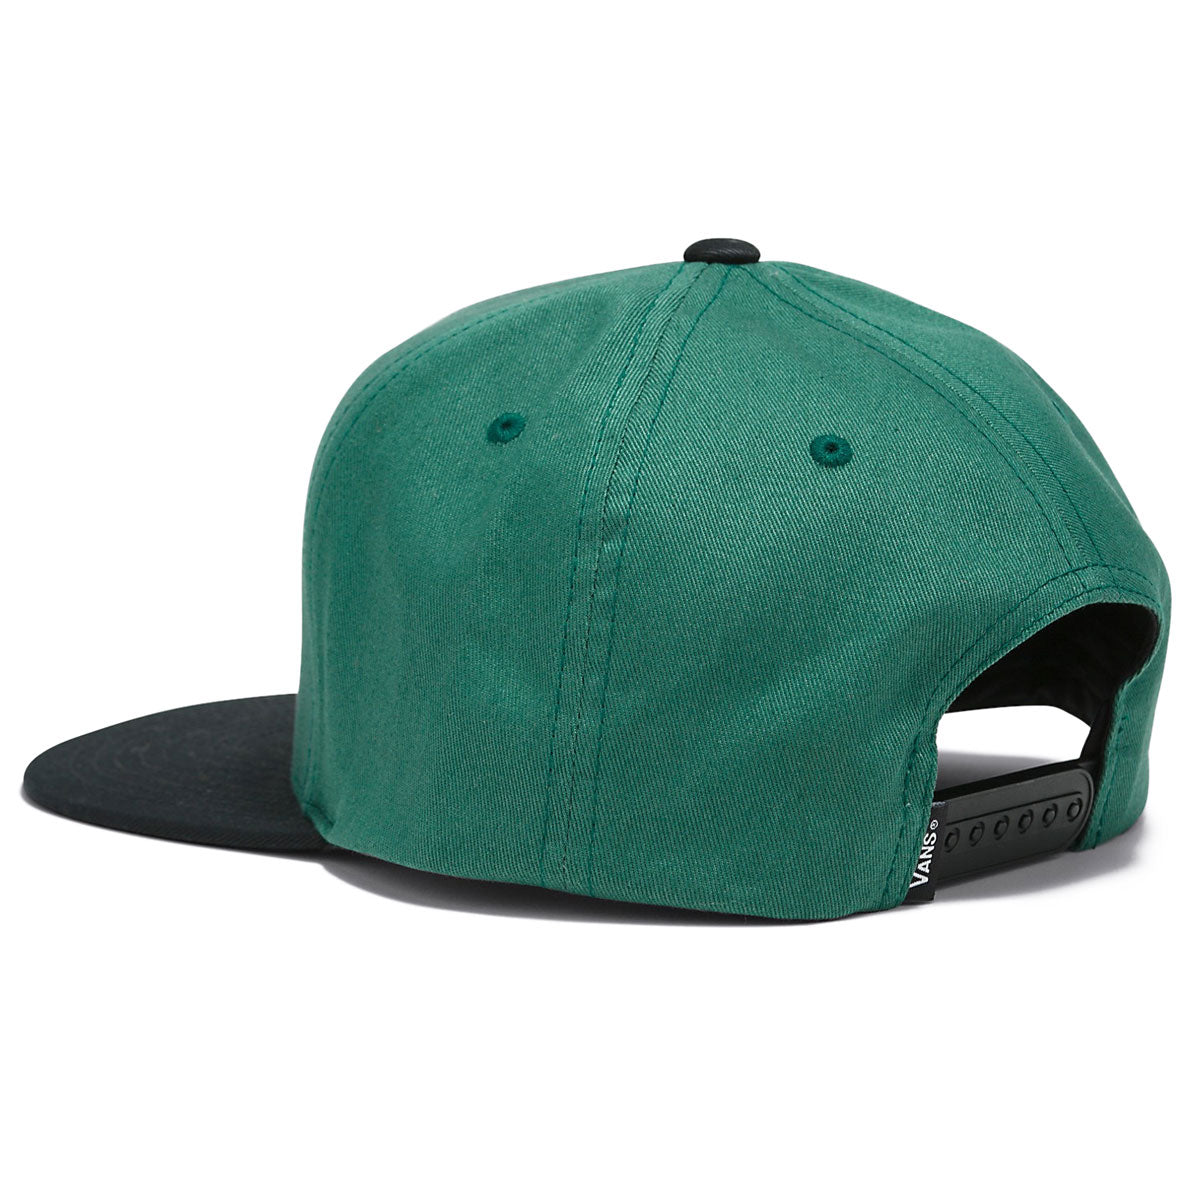 Vans Quoted Snapback Hat - Bistro Green image 2